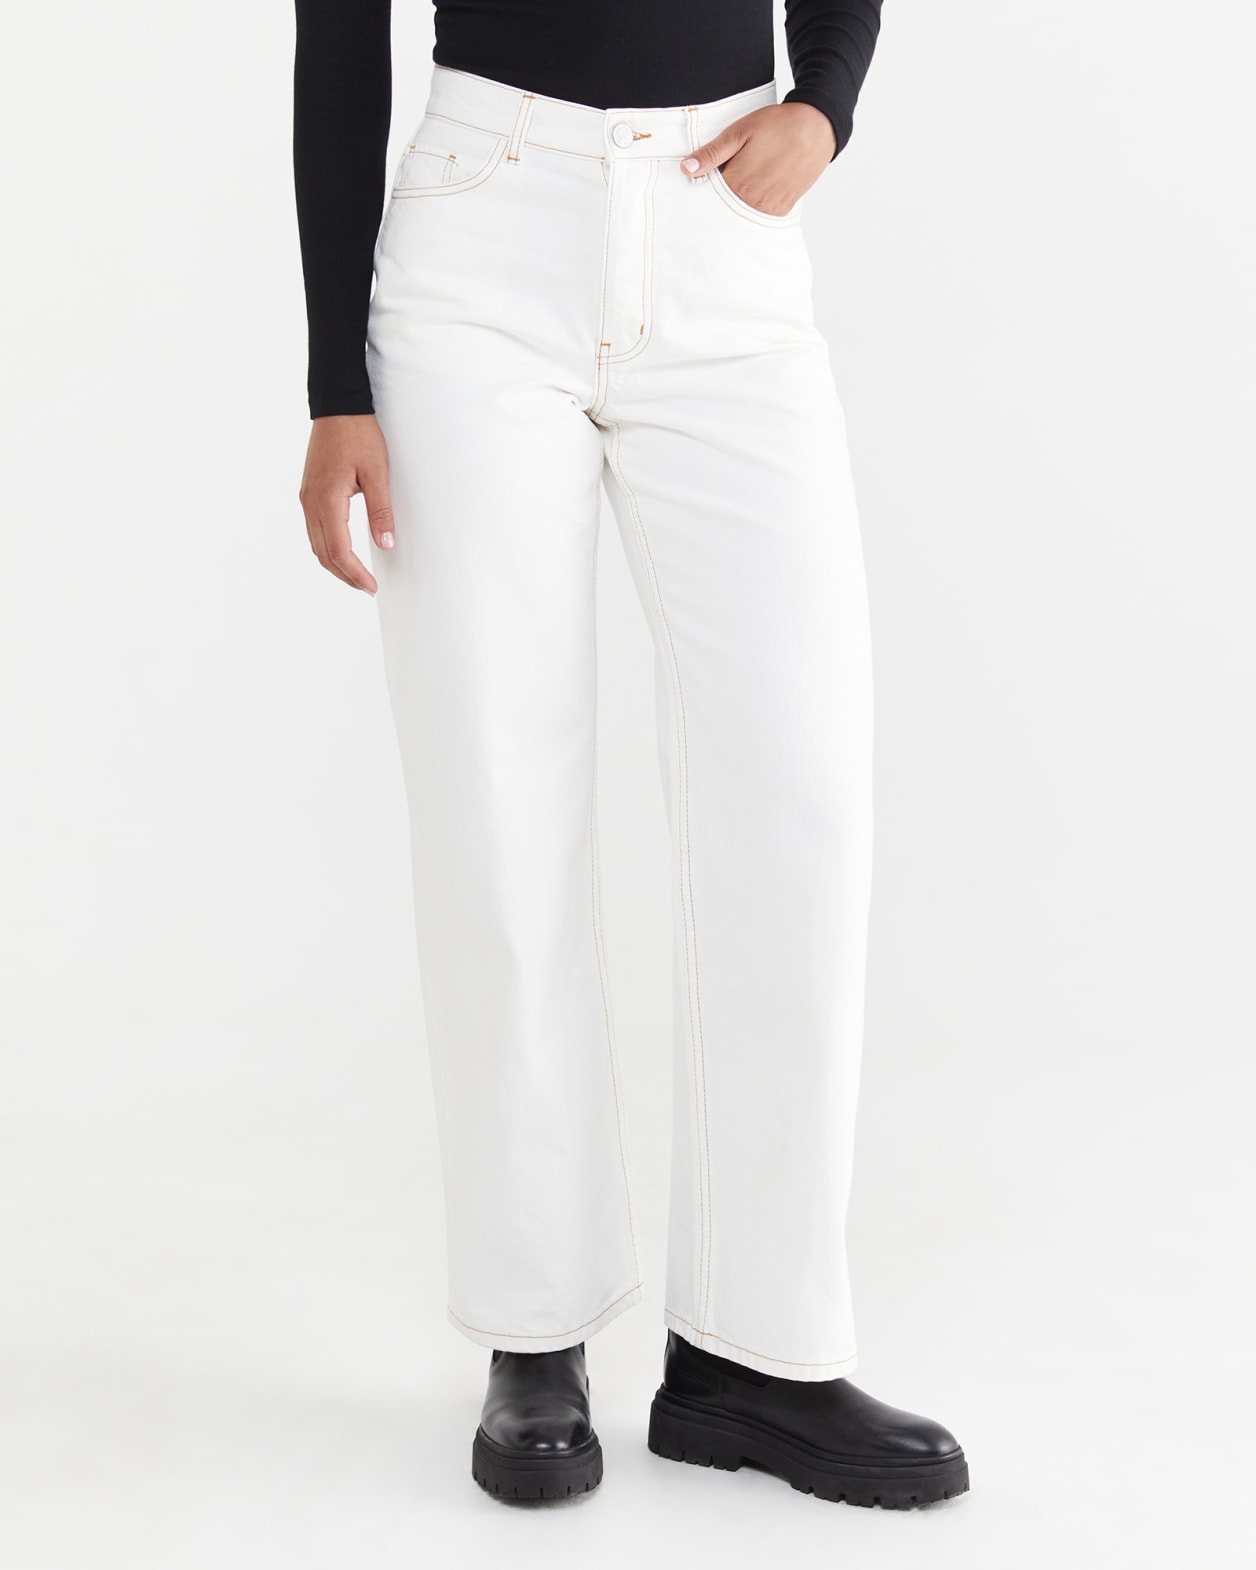 Tyla Mid Rise Garment Dye Jeans in WHITE